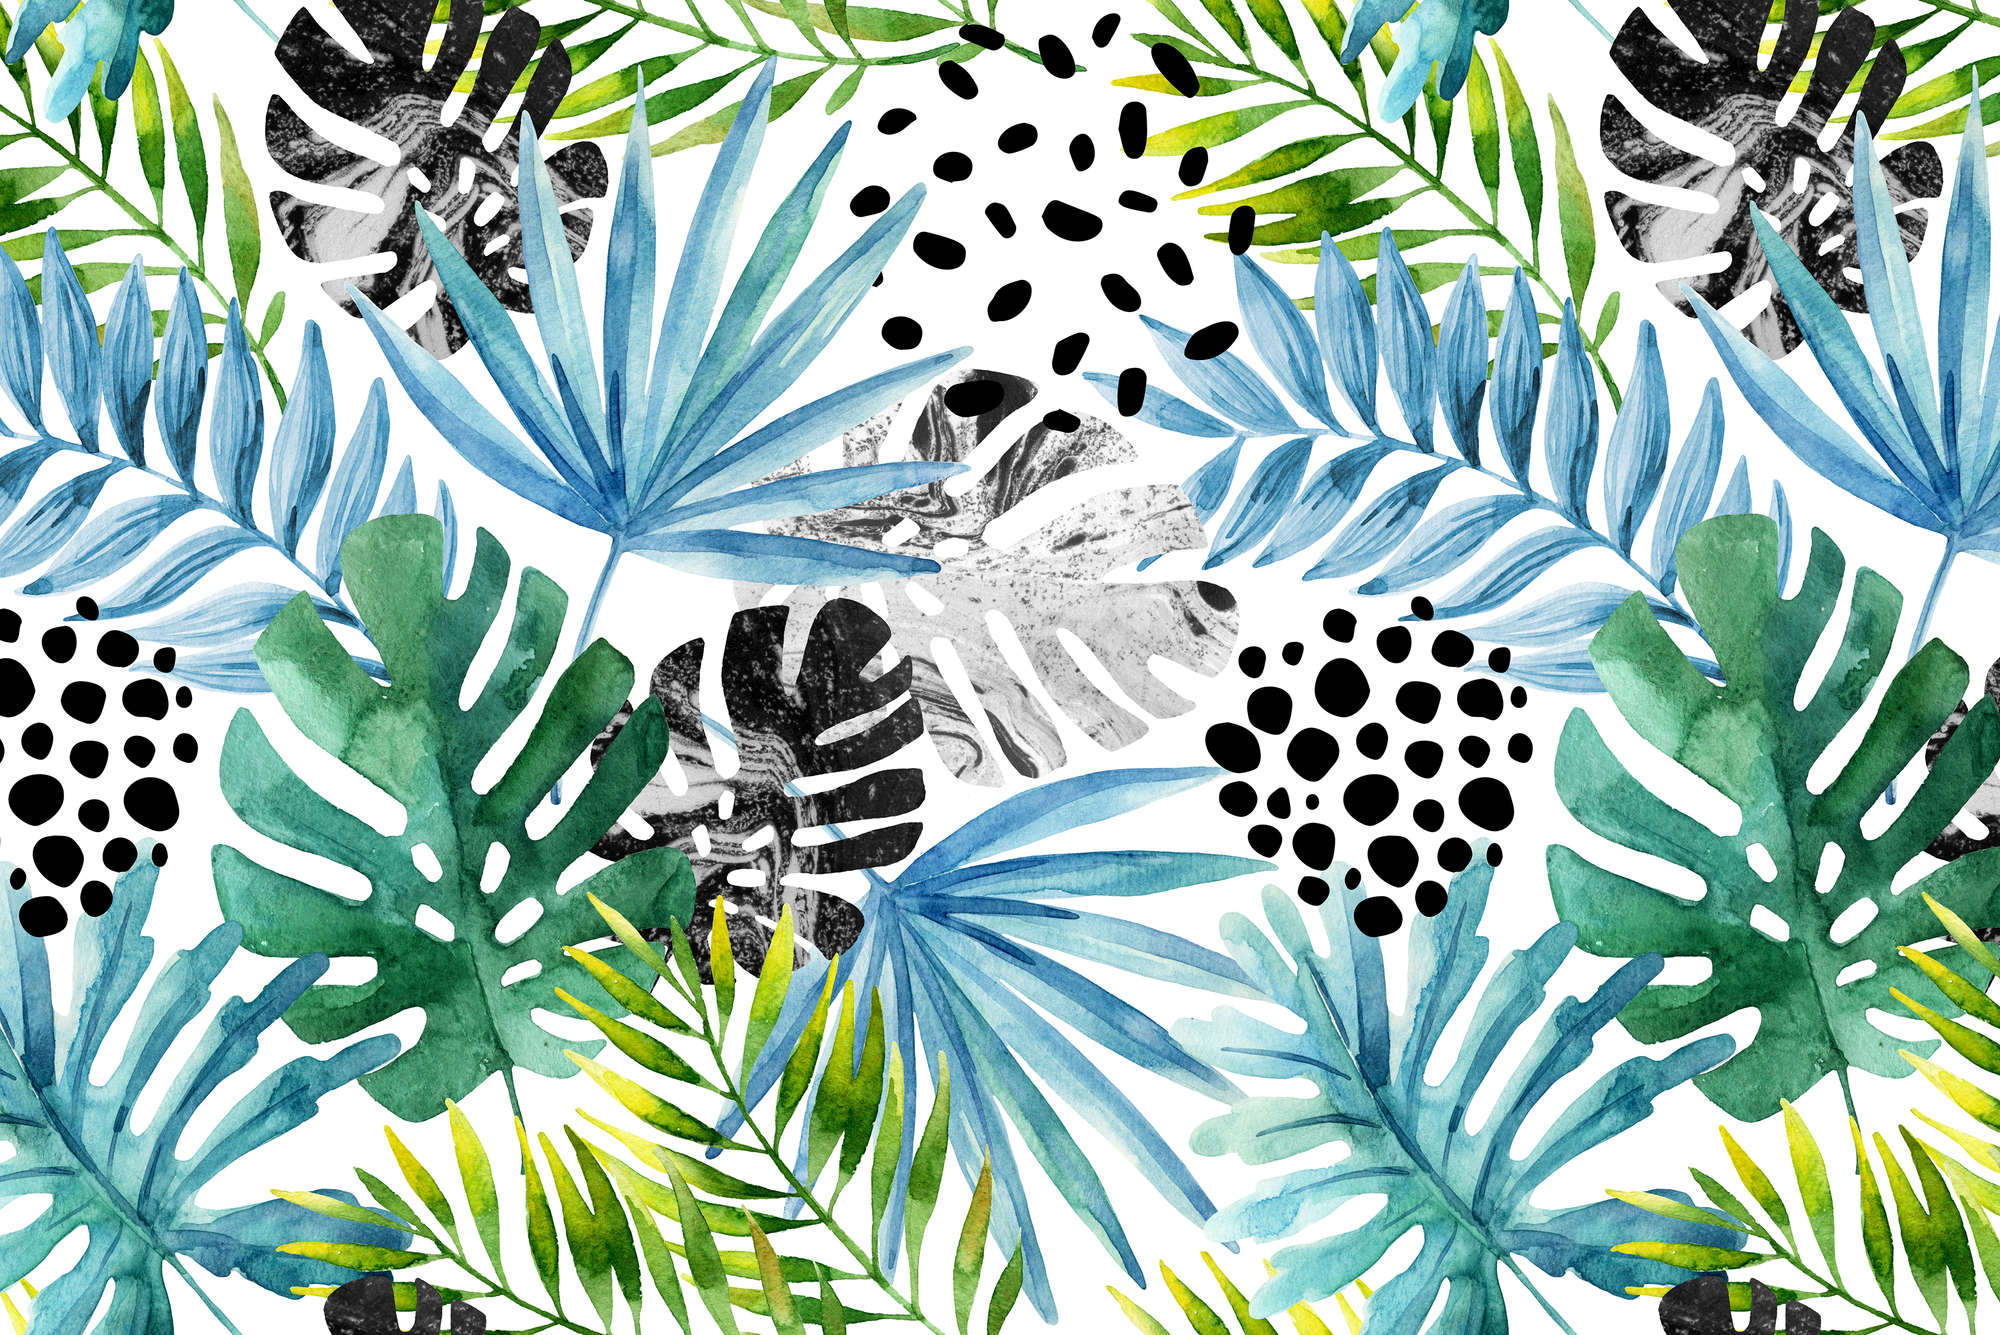             Carta da parati grafica con piante della giungla colorate su pile liscio di prima qualità
        